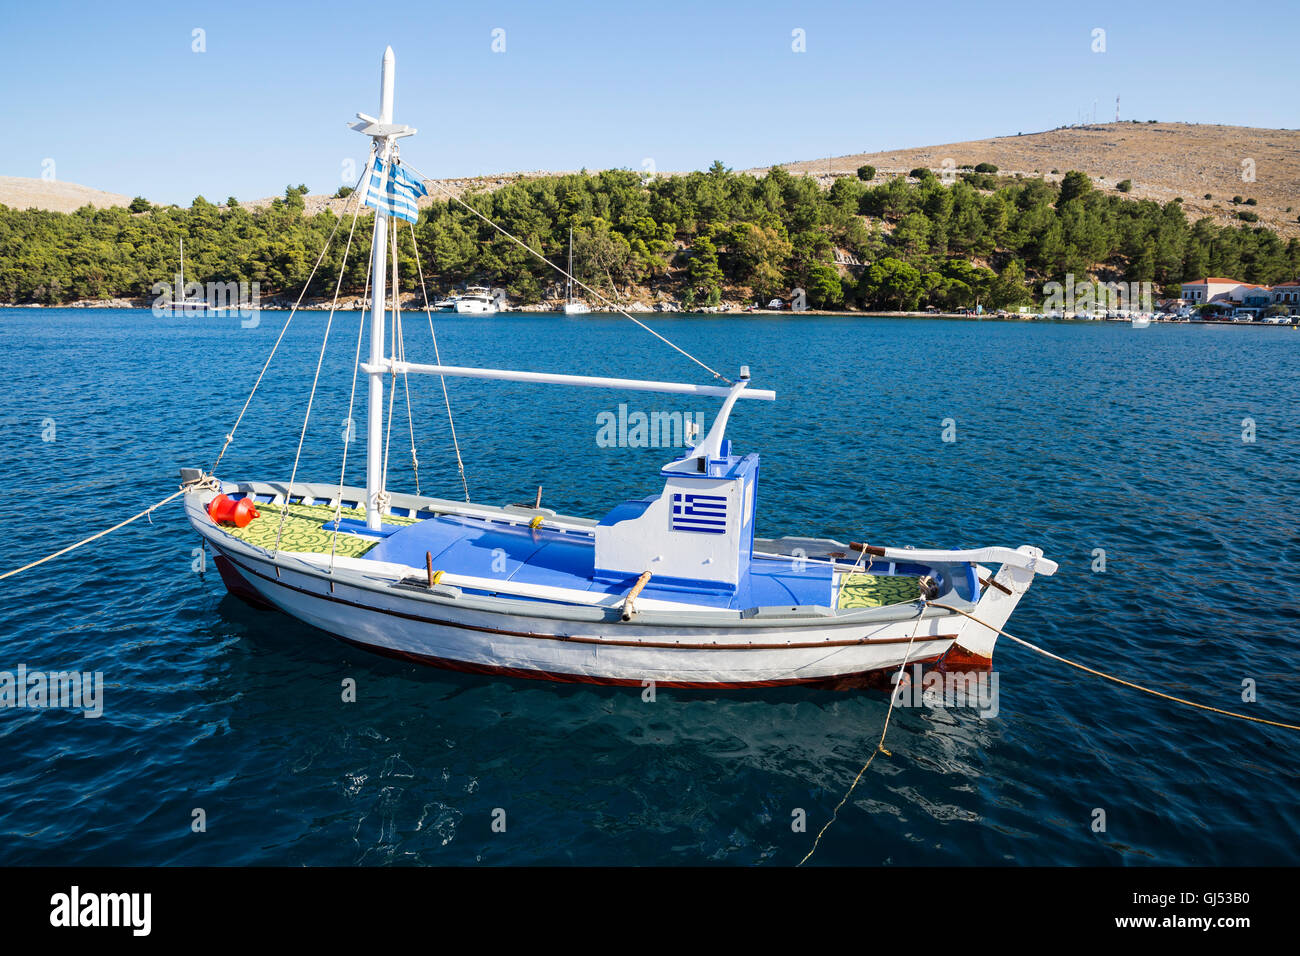 Petit bateau de pêche traditionnelle en mer dans Archangelos village, l'île de Chios Chios, Sakiz Adasi.en turc. Banque D'Images